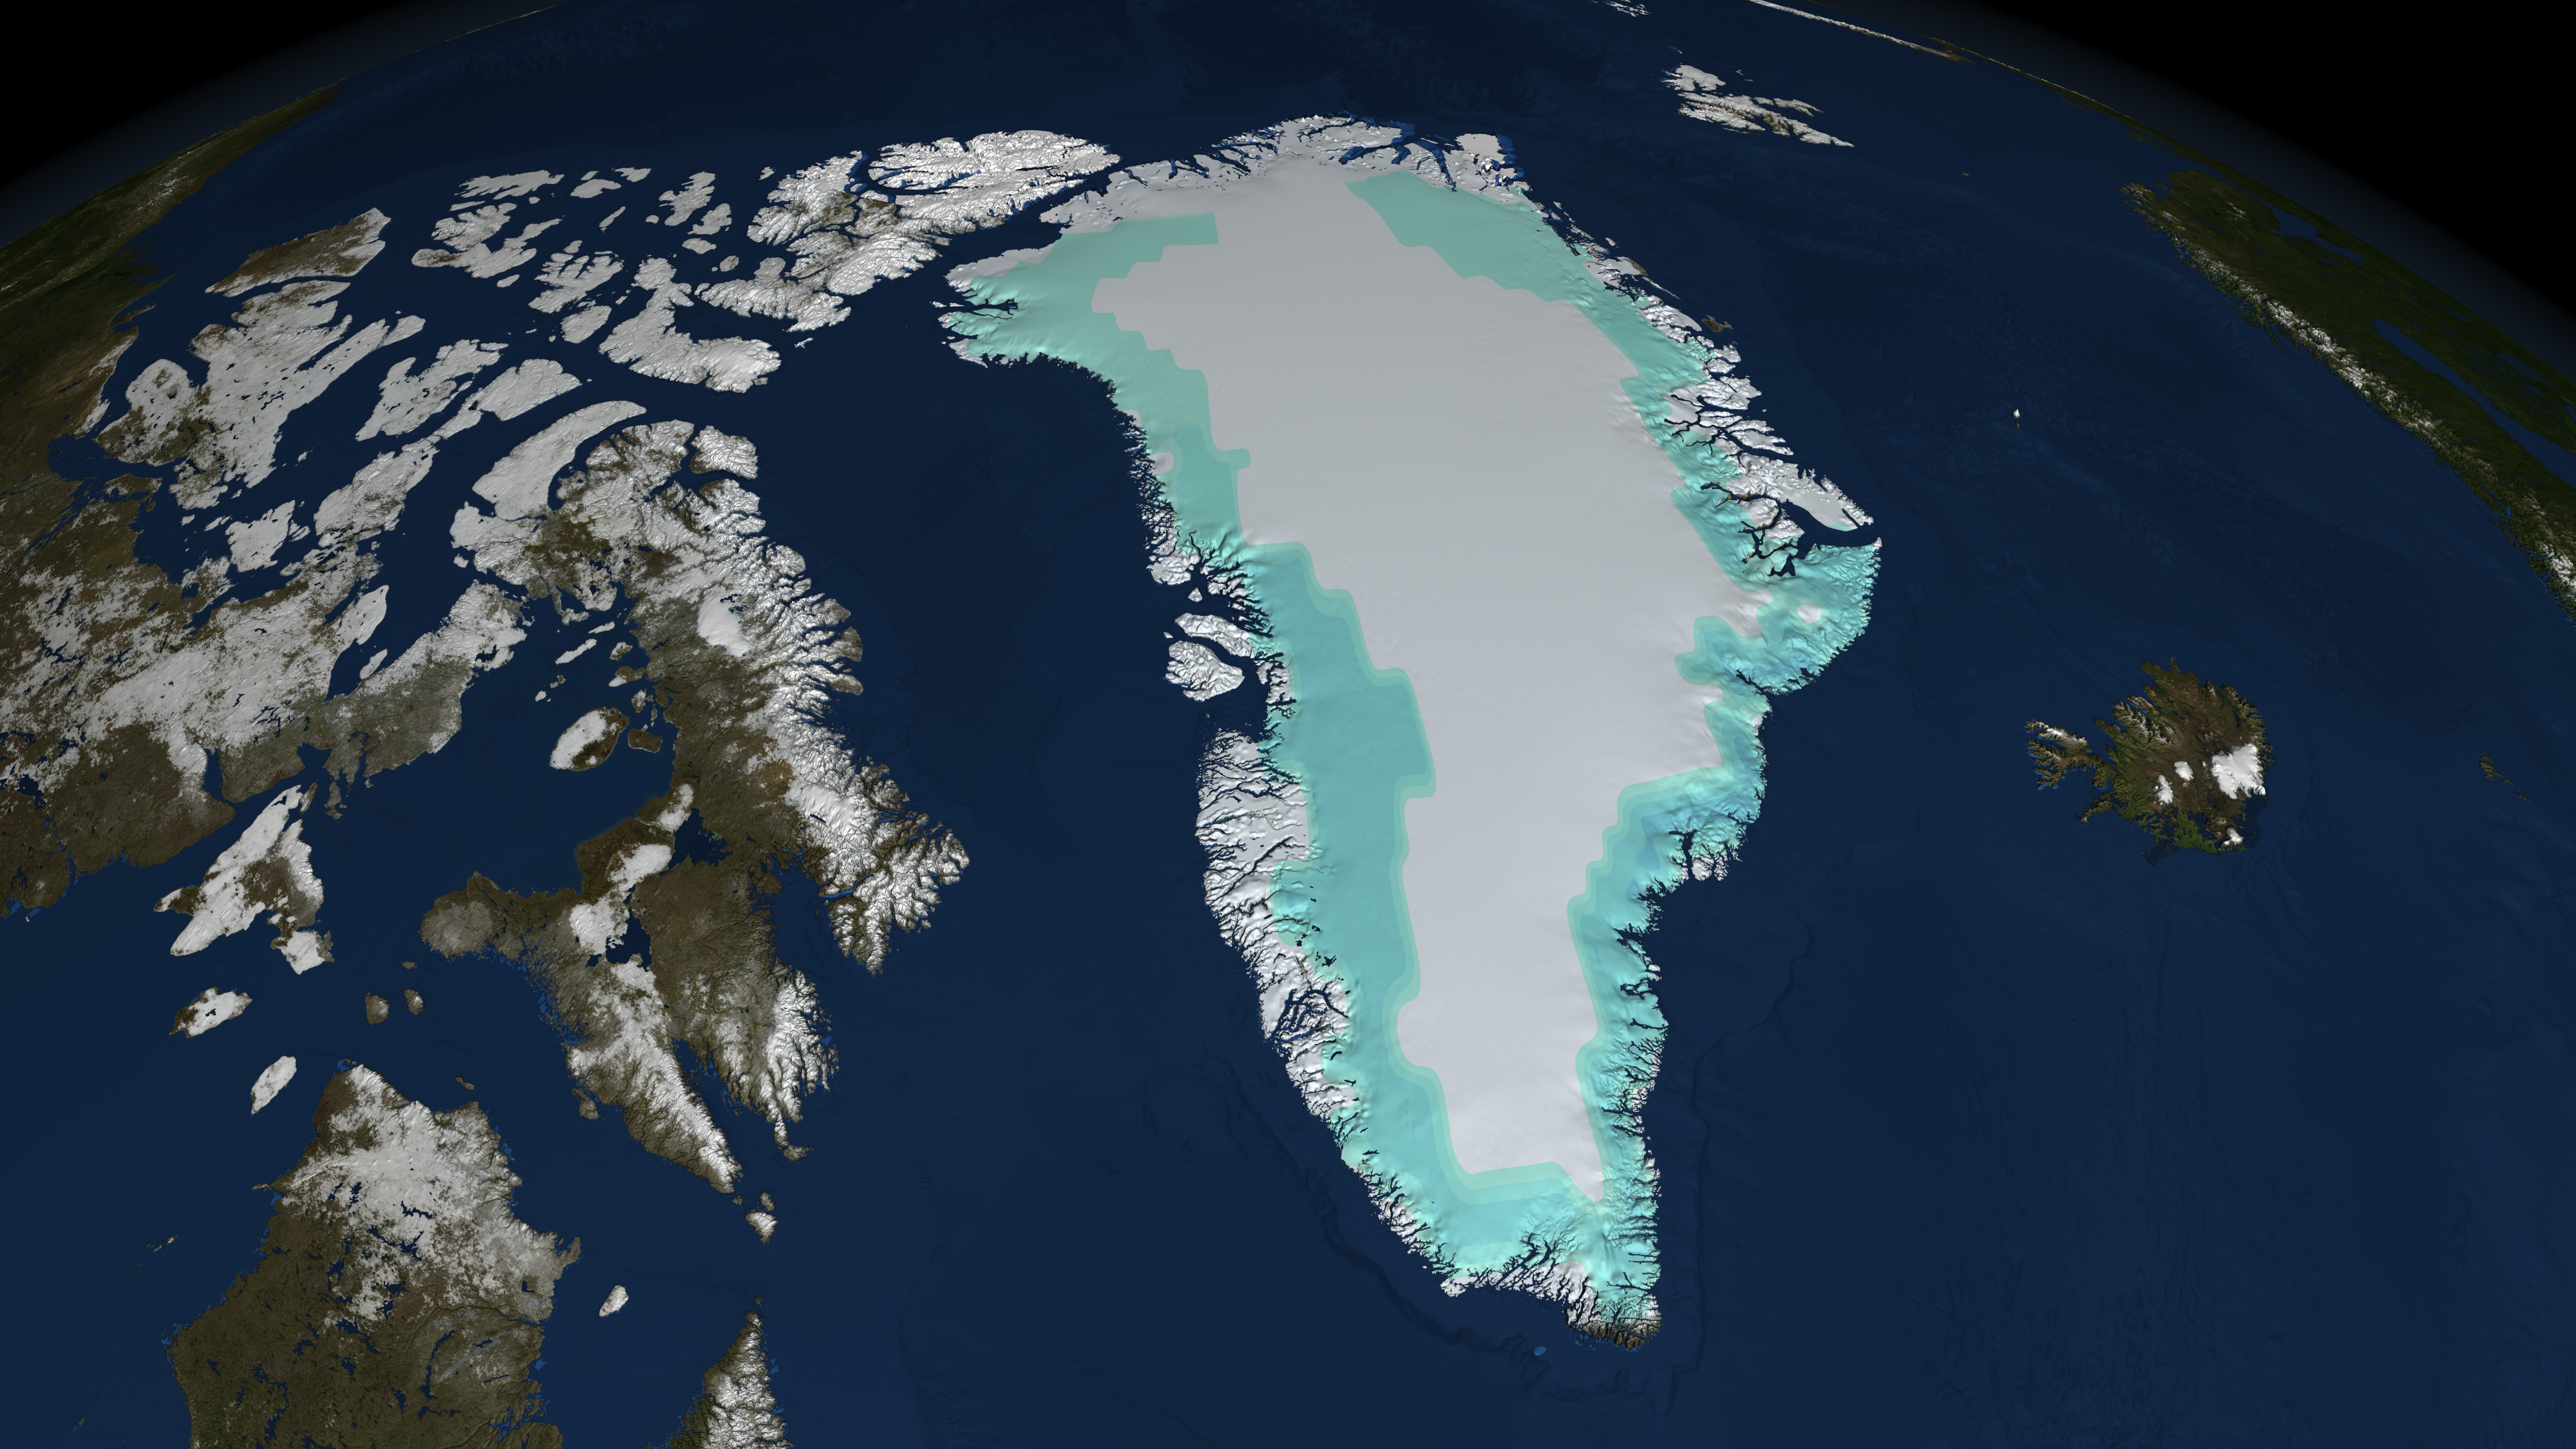 Островами похожими на материки. Гренландия со спутника. Гренландия снимок из космоса. Самый большой остров в мире Гренландия. Остров Гренландия снимок из космоса.